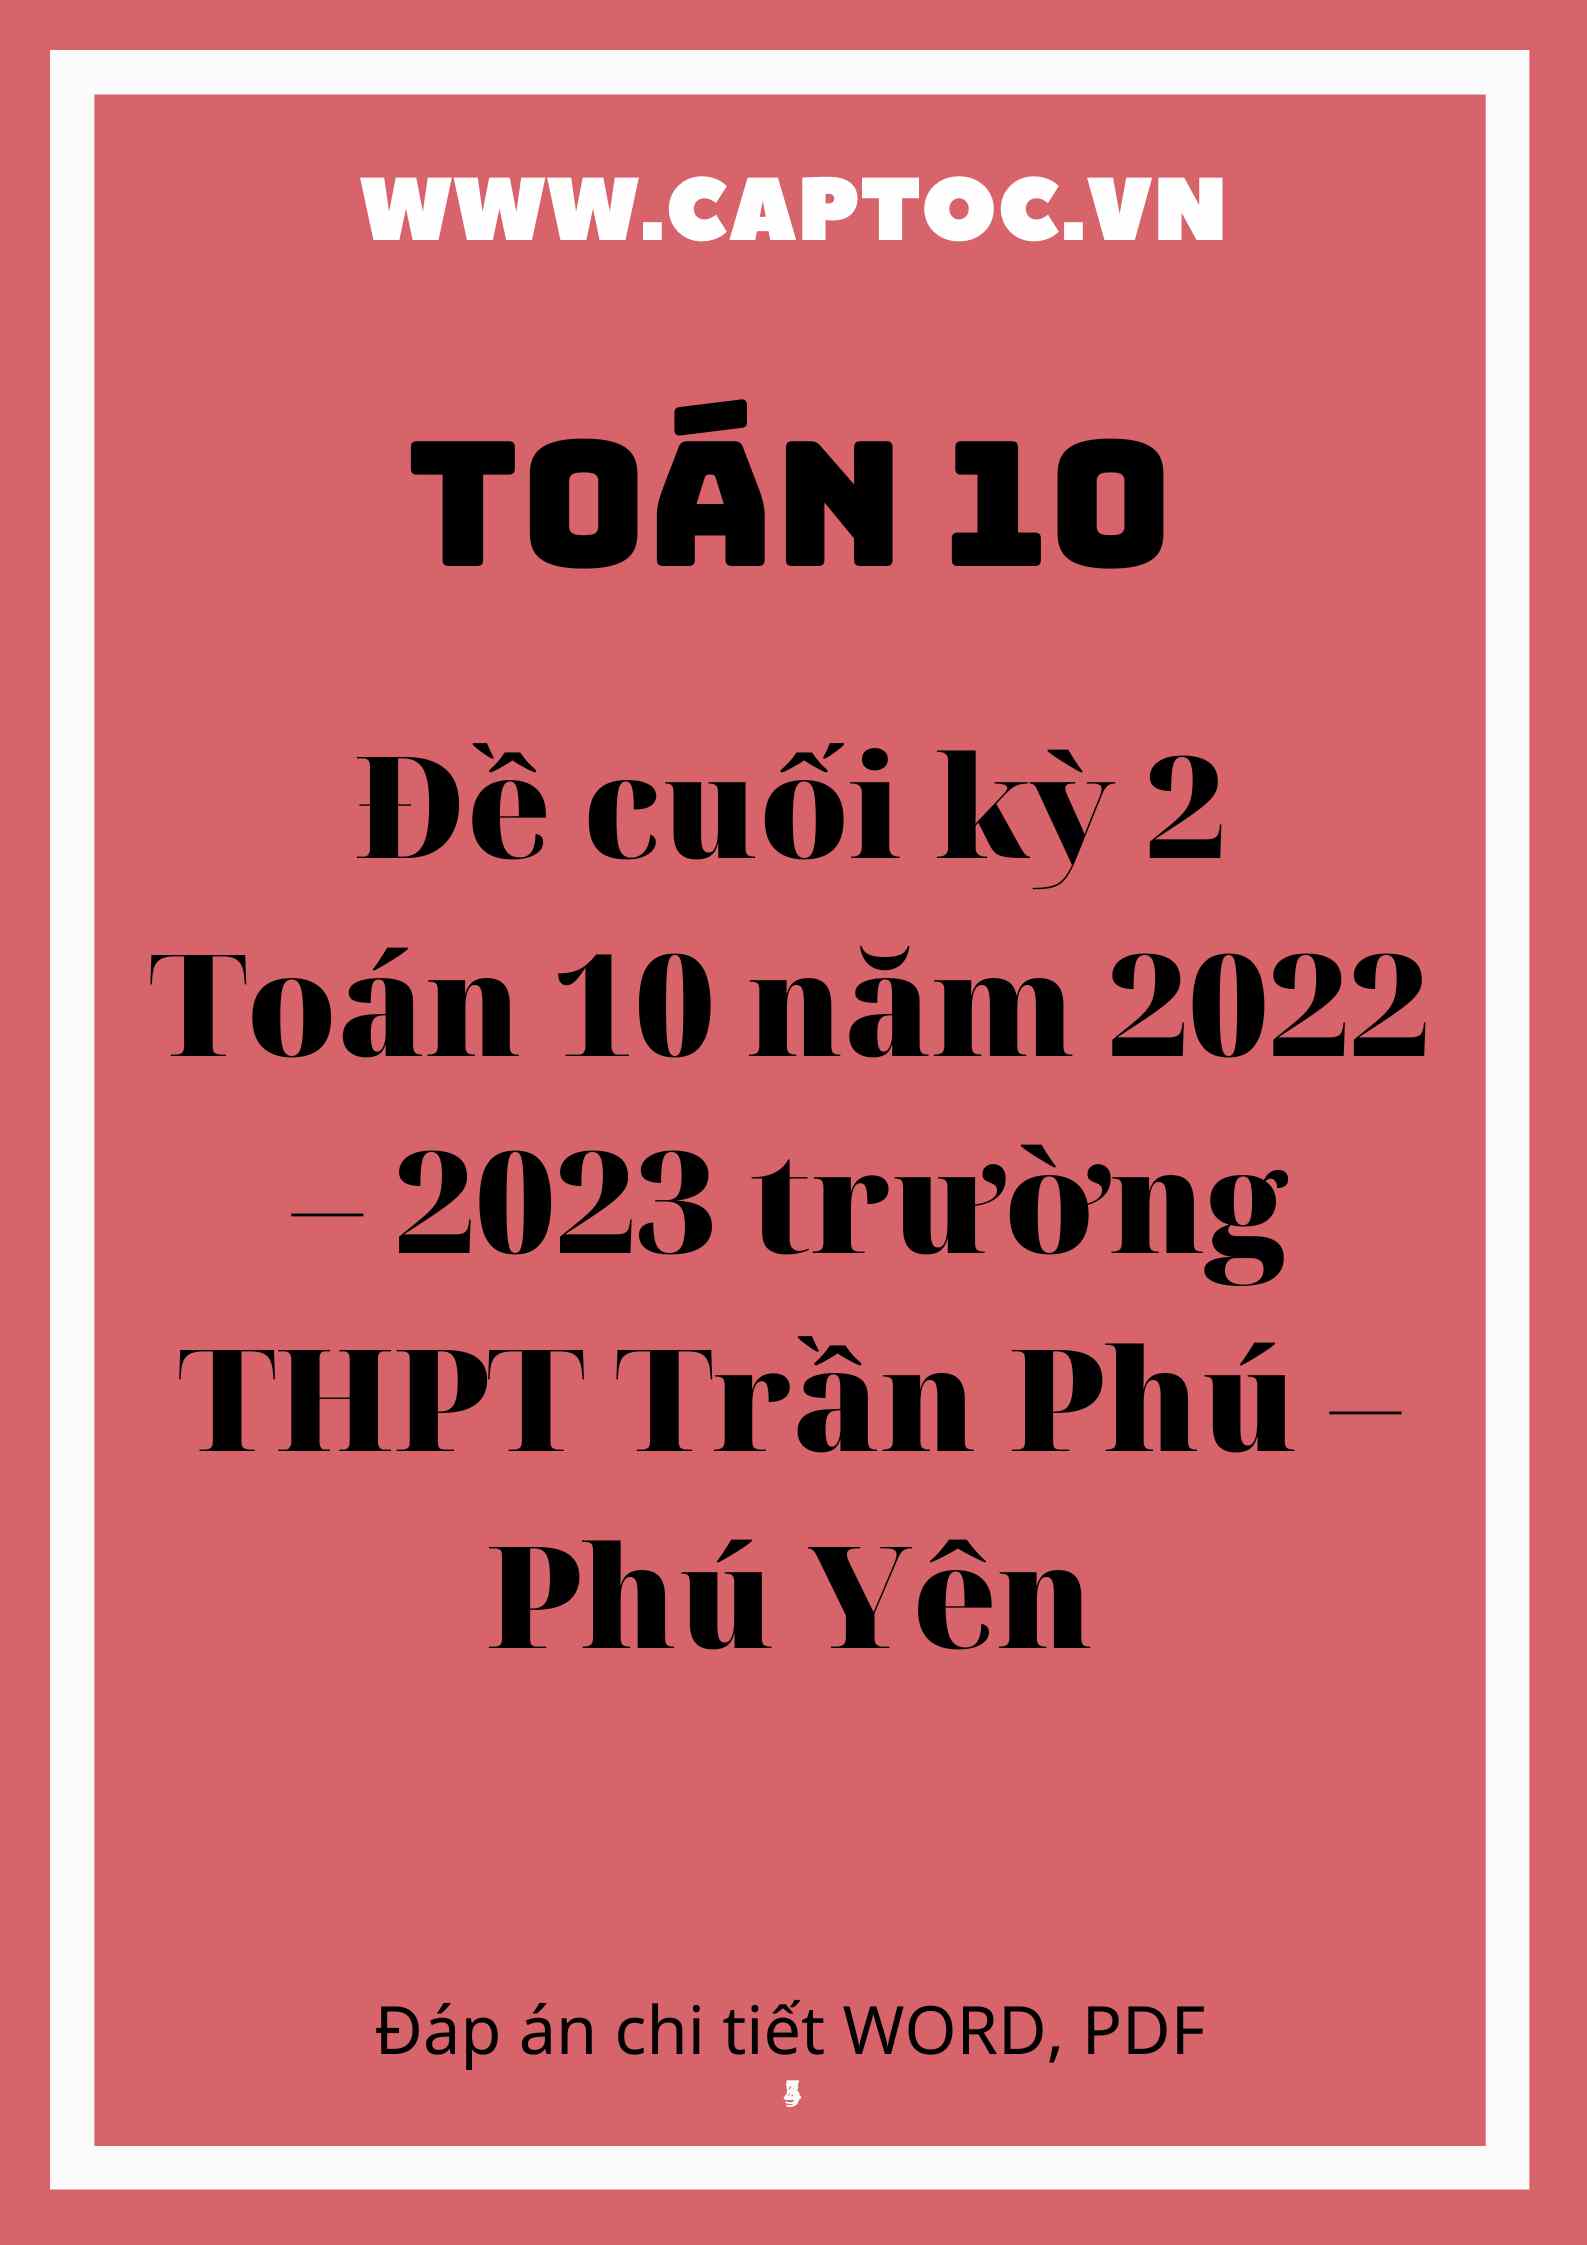 Đề cuối kỳ 2 Toán 10 năm 2022 – 2023 trường THPT Trần Phú – Phú Yên